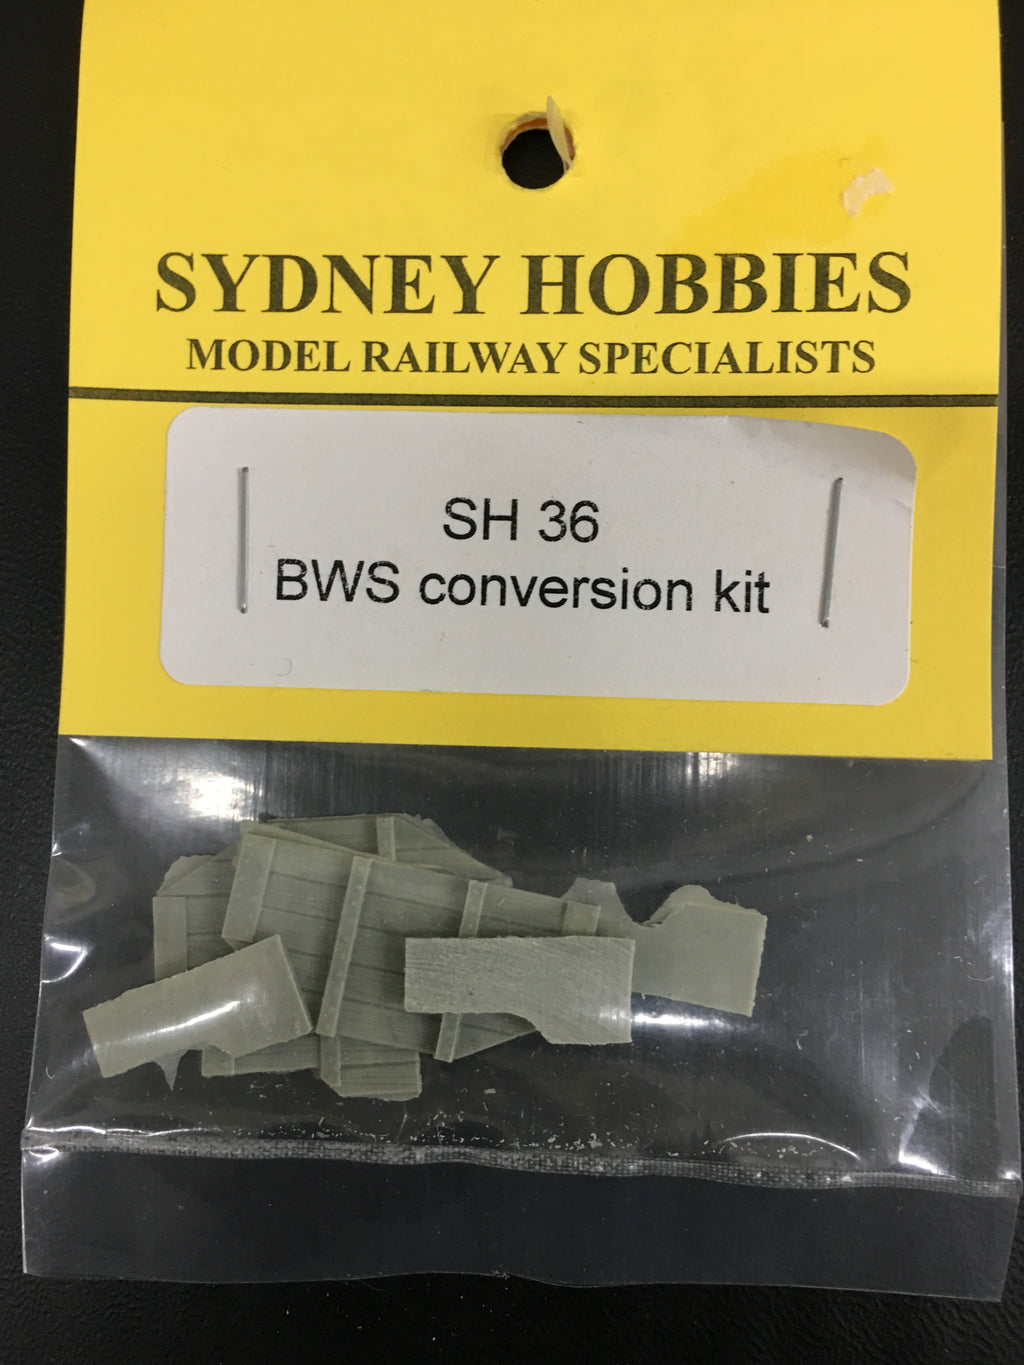 SH36 BWS Conversion Kit using a SILVERMAZ "S" wagon kit.